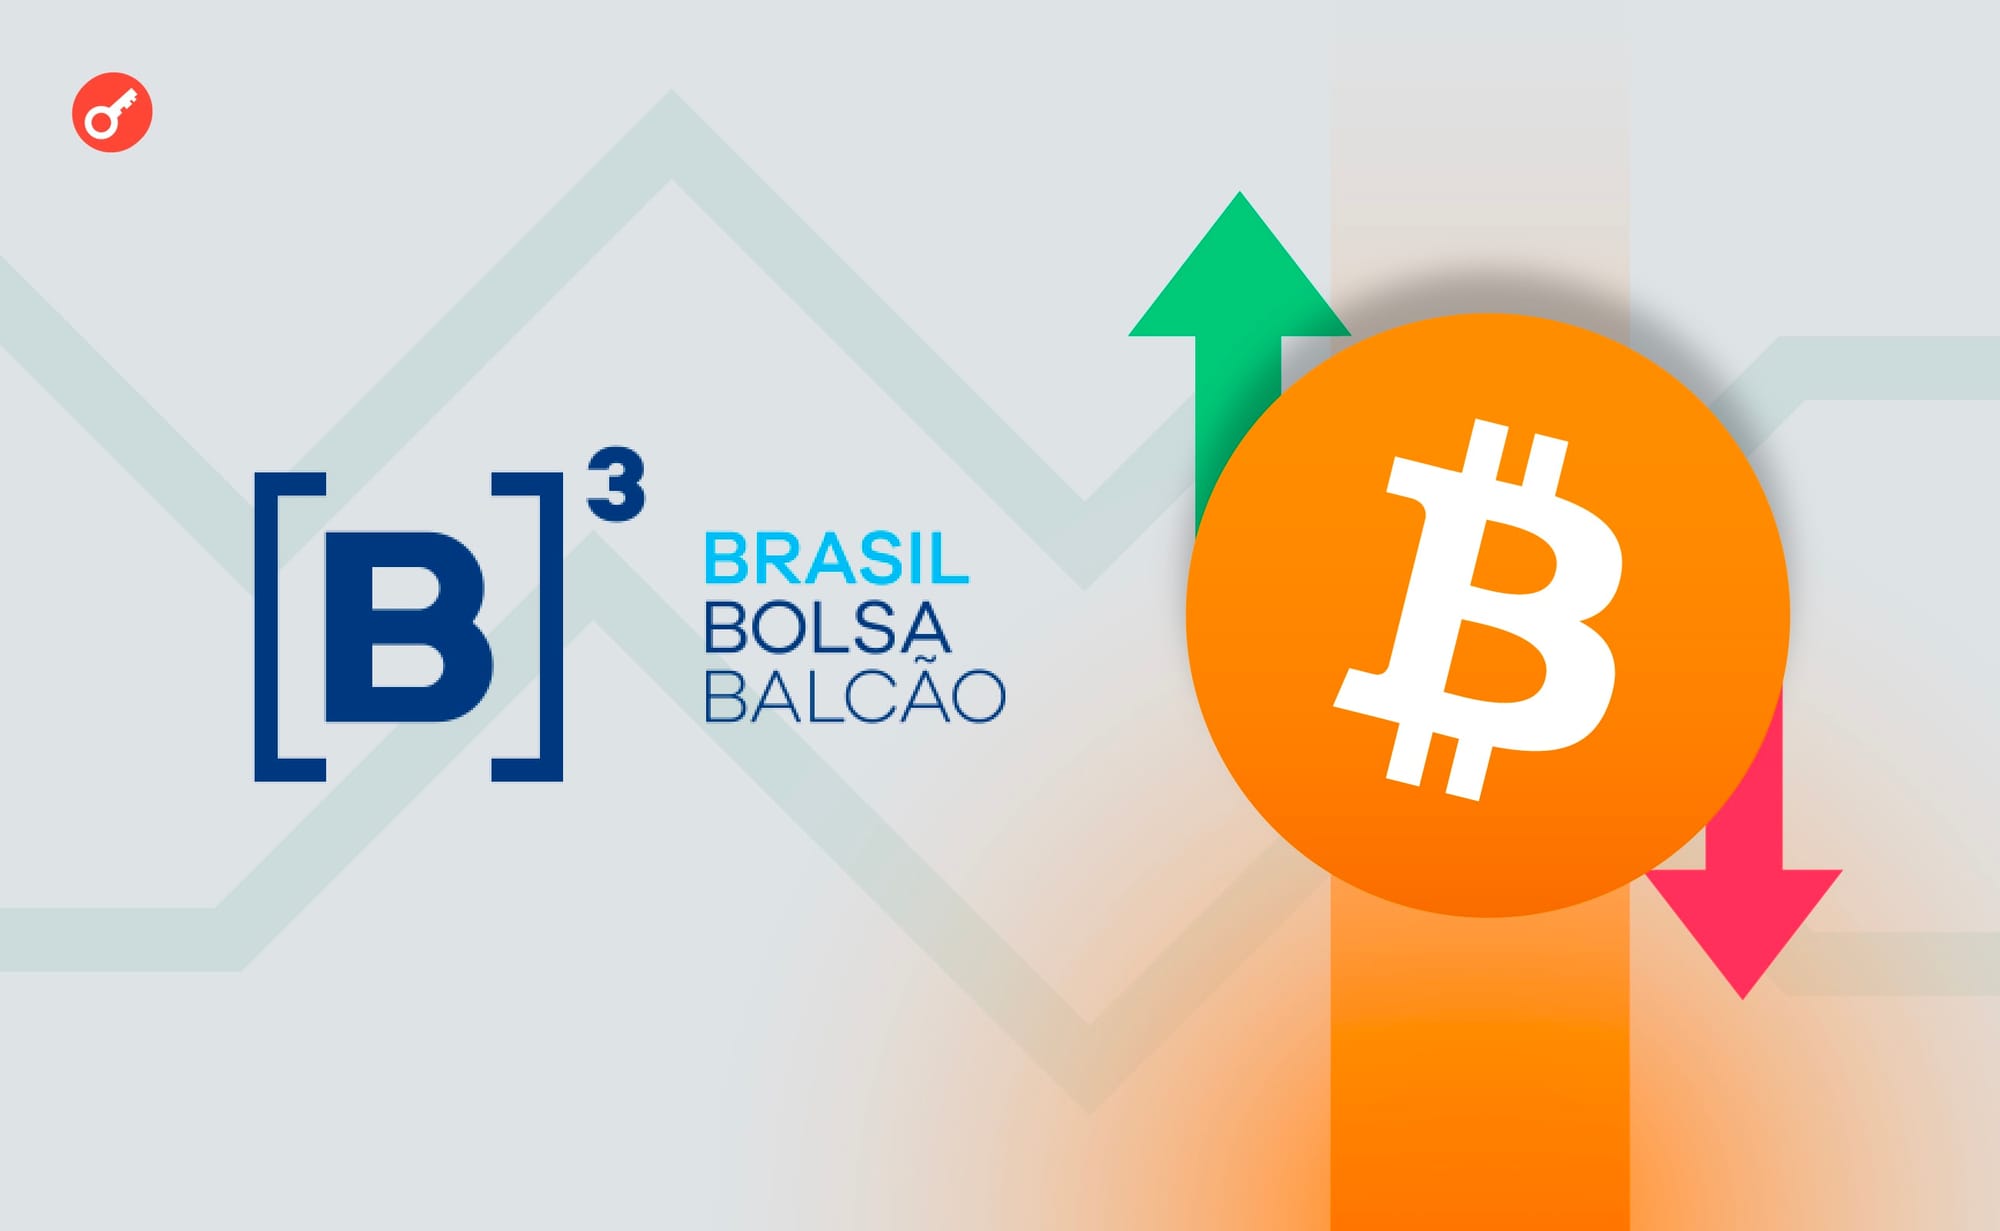 Brazilian B3 Exchange to Allow Bitcoin Futures trading